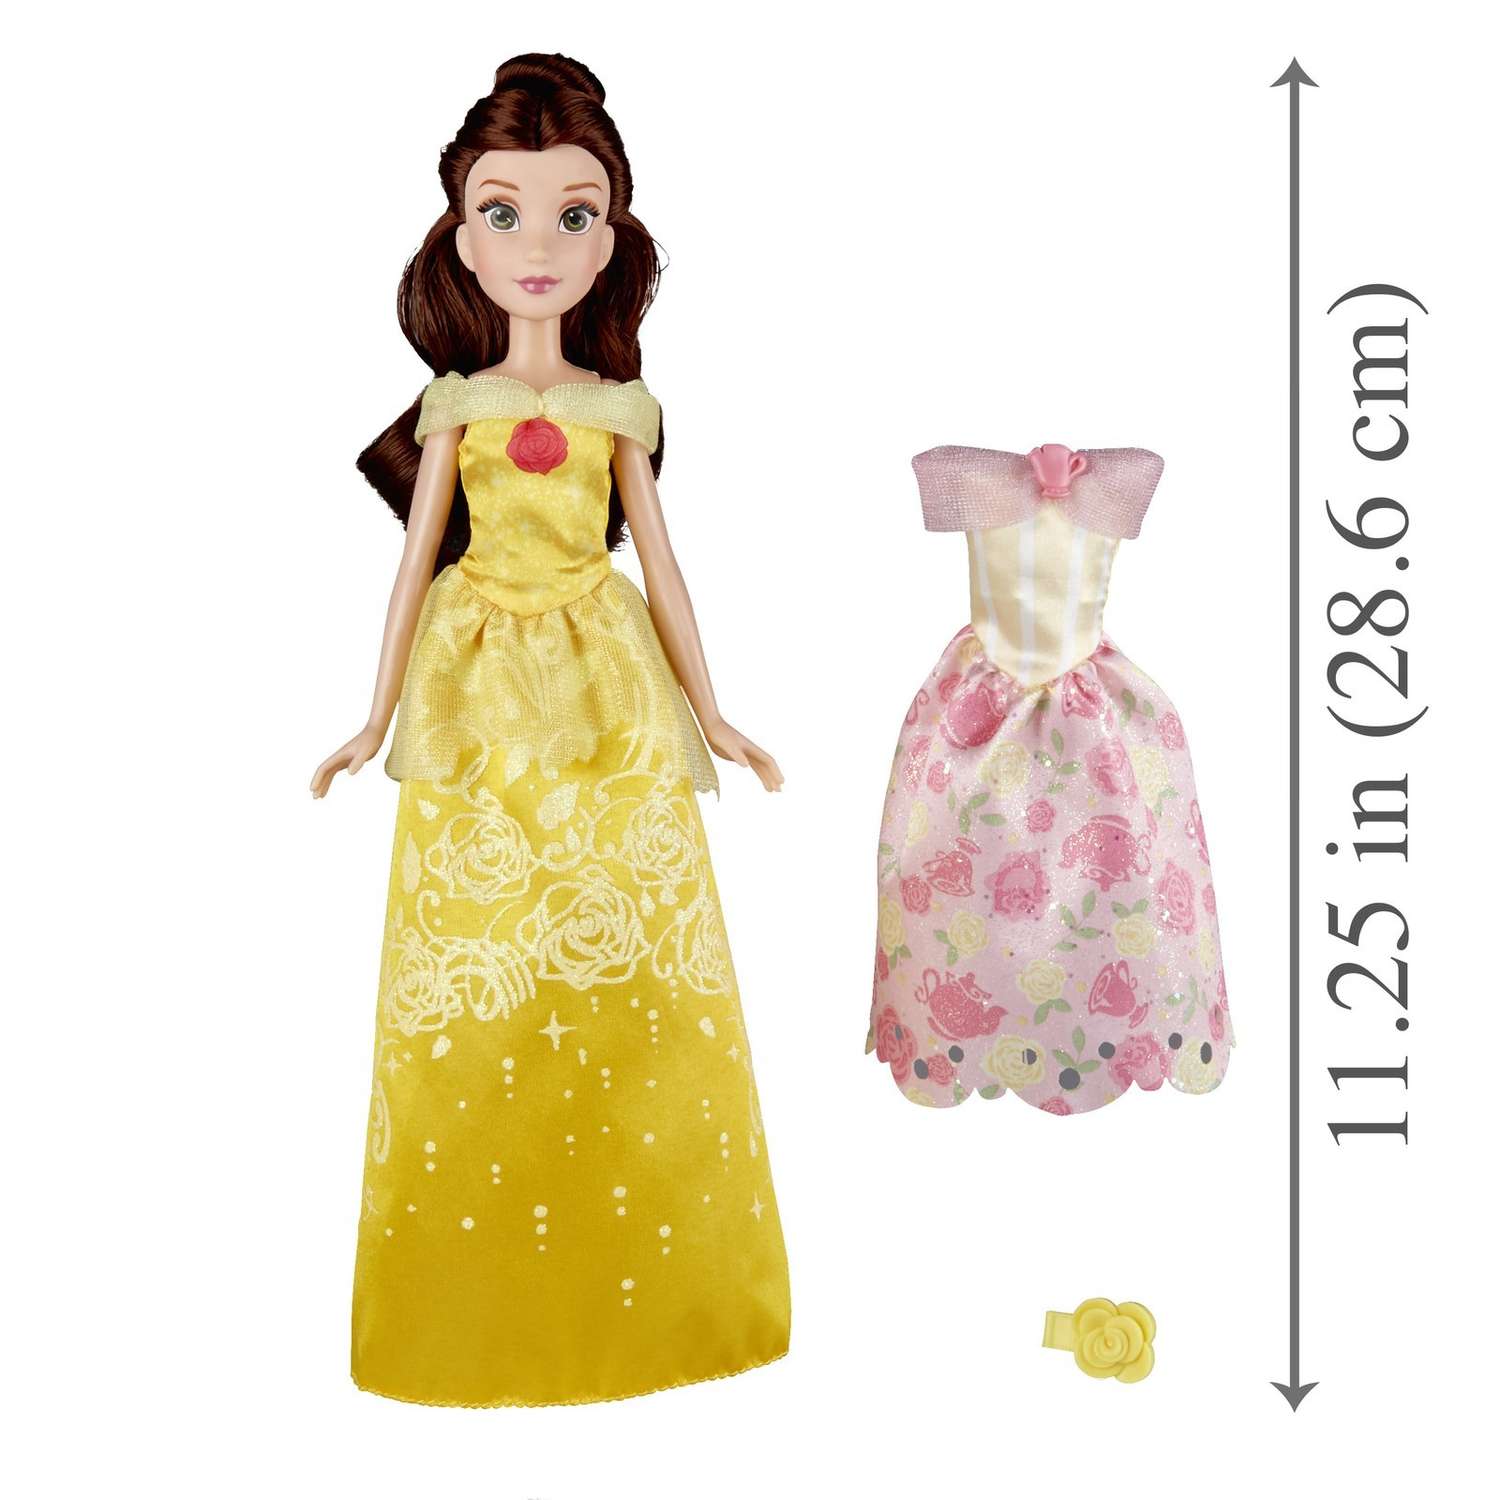 Кукла Princess Disney с двумя нарядами в ассортименте E0073EU41 E0073EU4 - фото 17